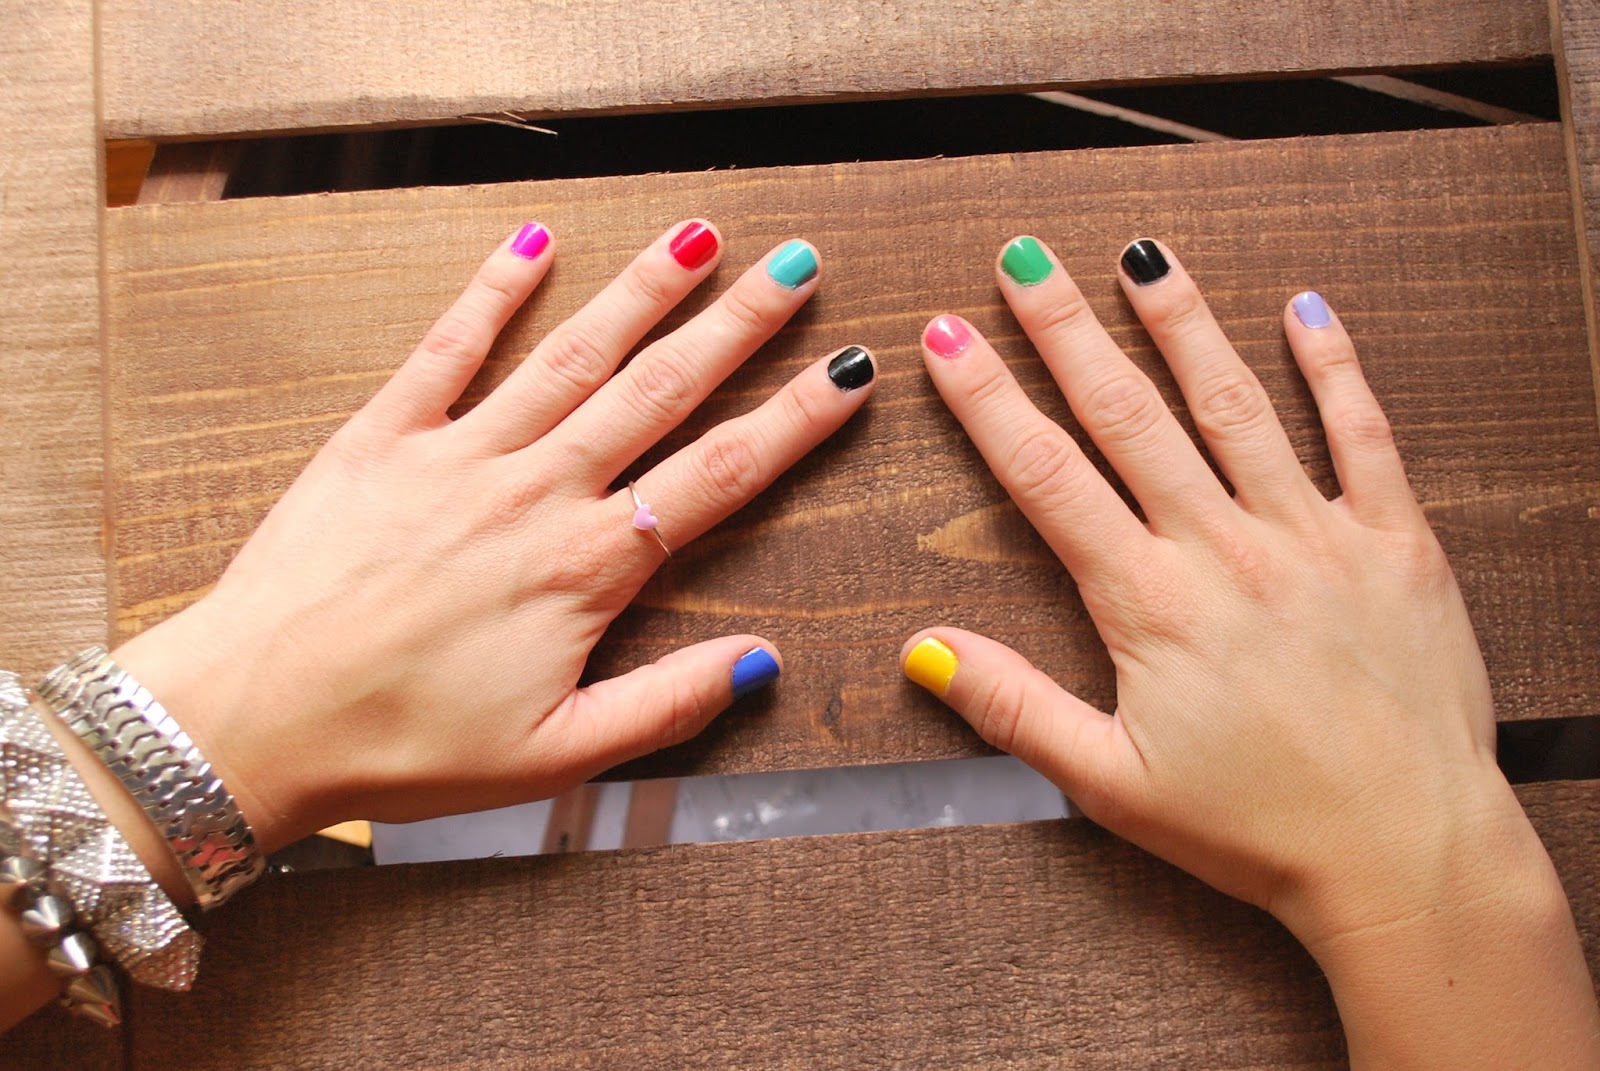 2. Multicolored Nail Designs - wide 9